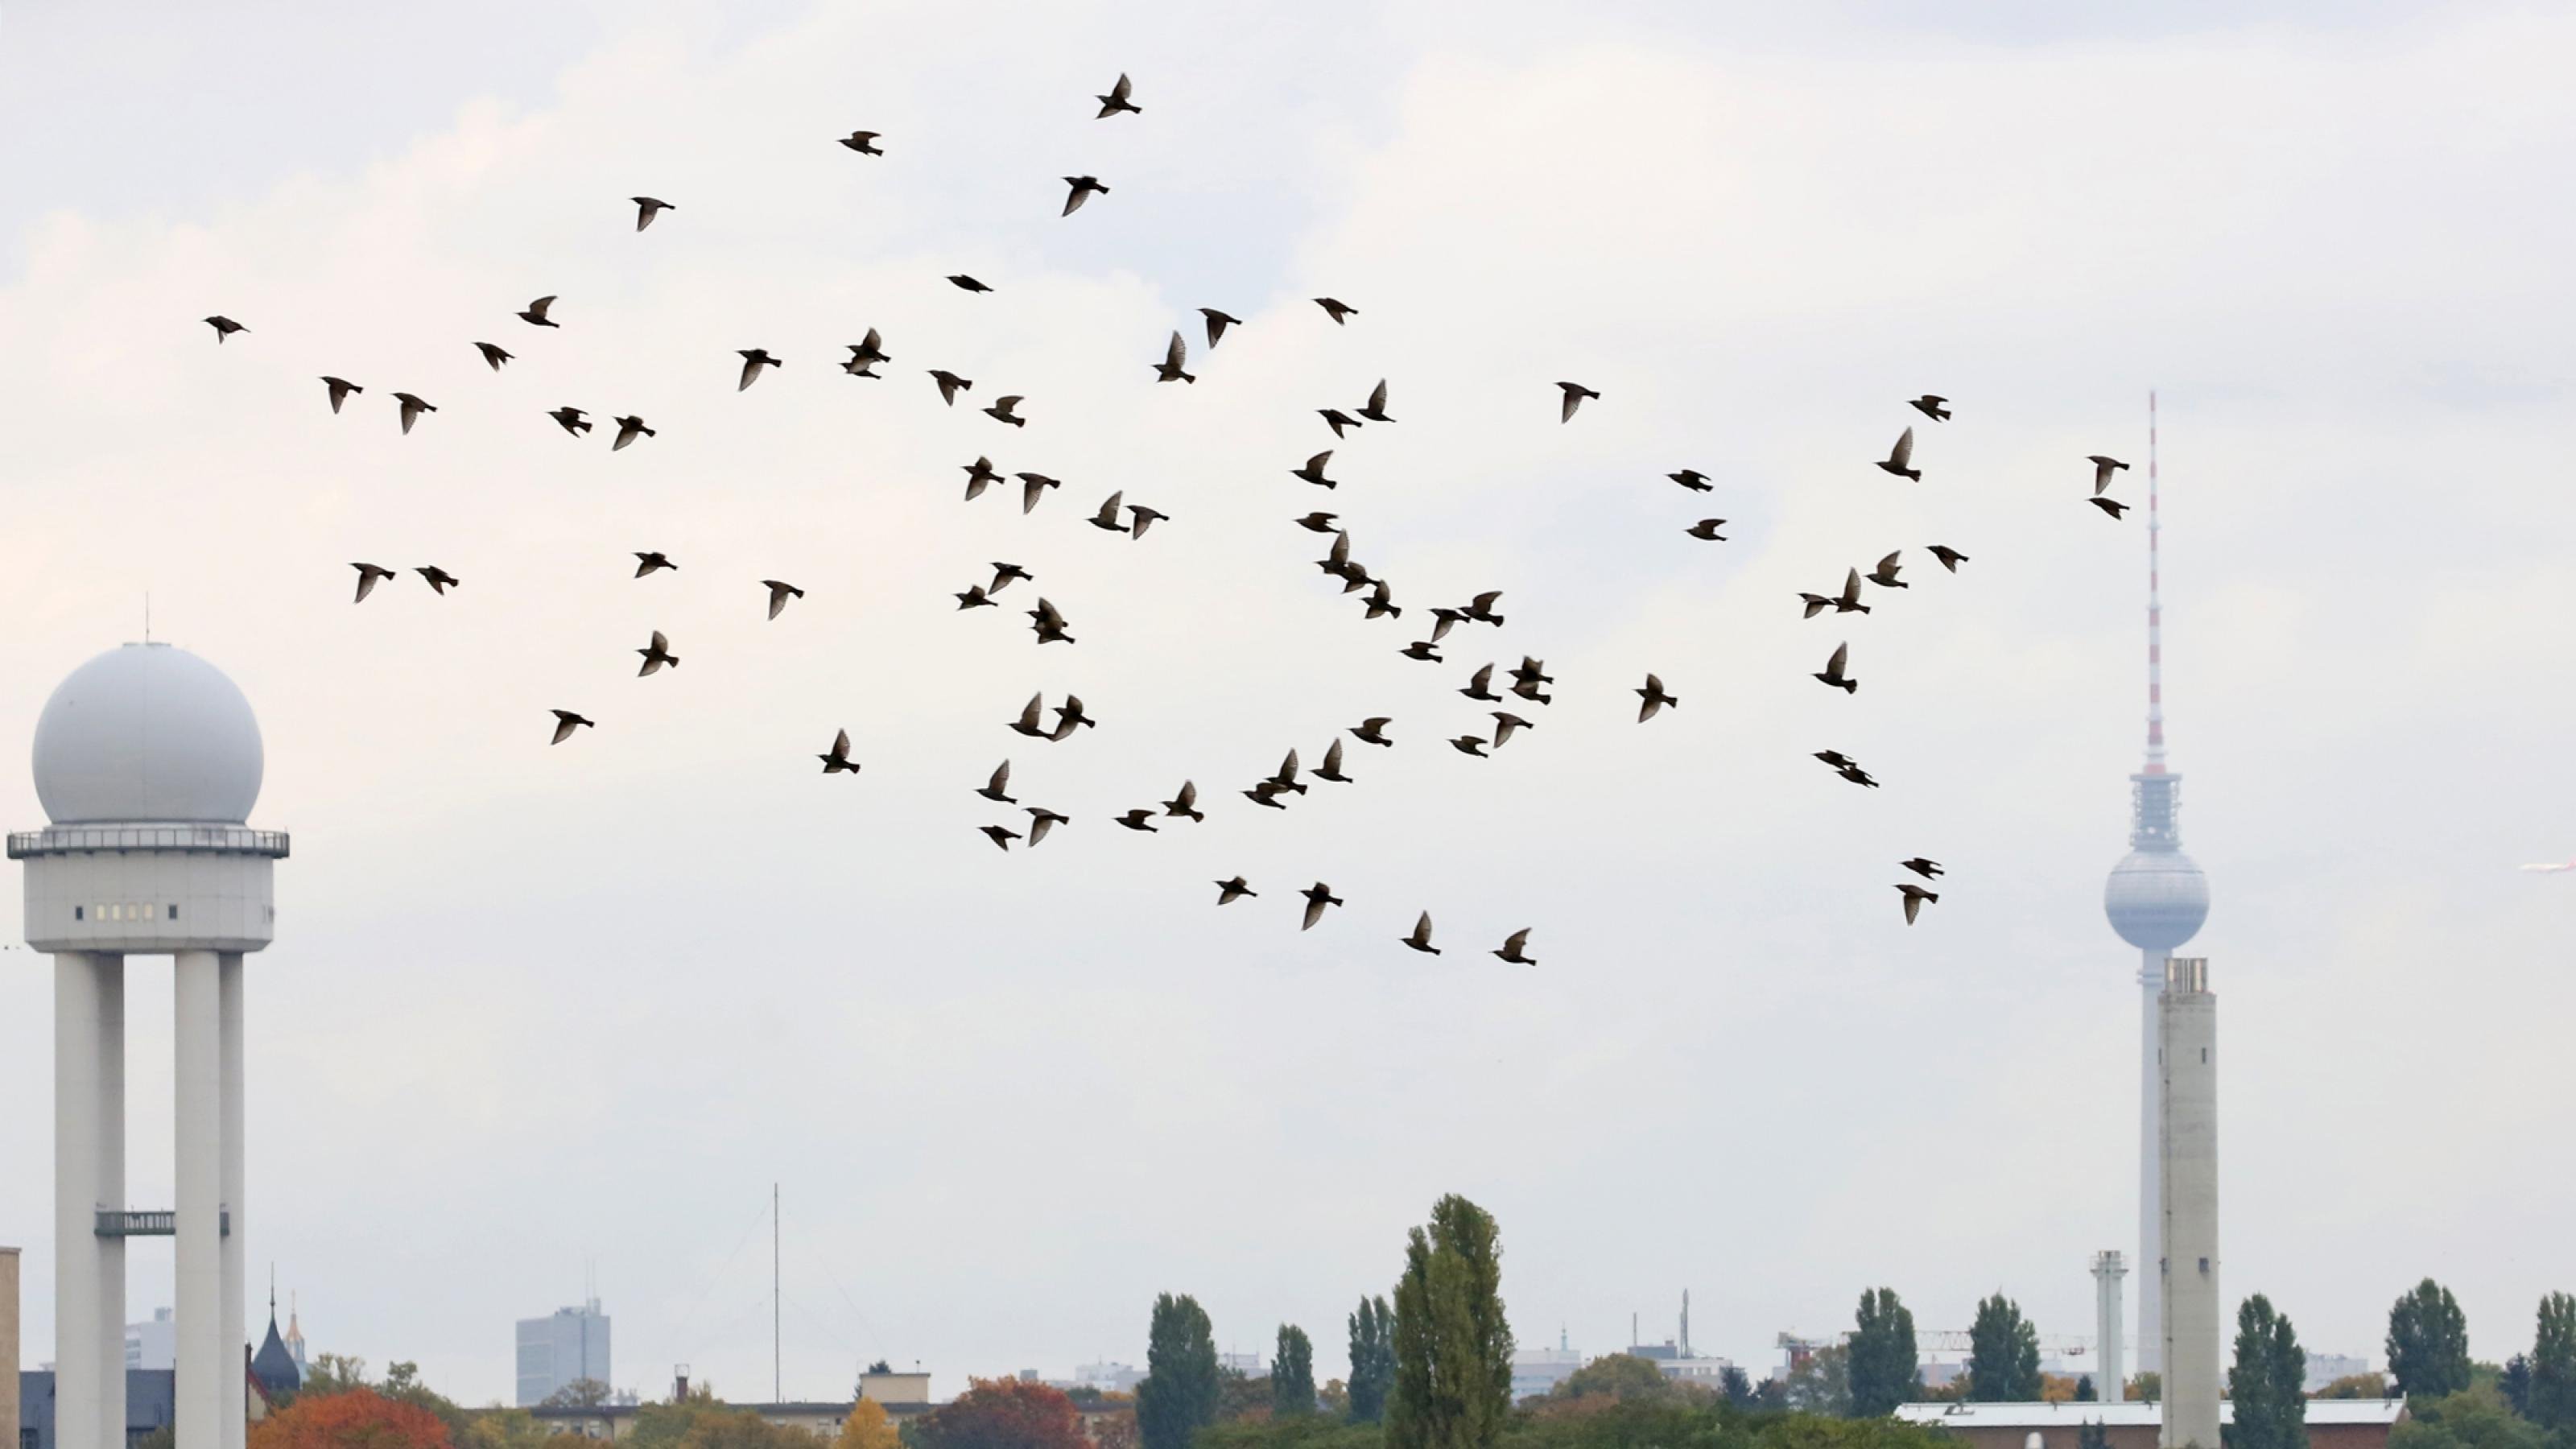 Das Bild stellt die Vögel auf dem früheren Flughafengelände dar. Im HIntergrund ist der alte Kontrolltower zu sehen, zudem der Berliner Fernsehturm.